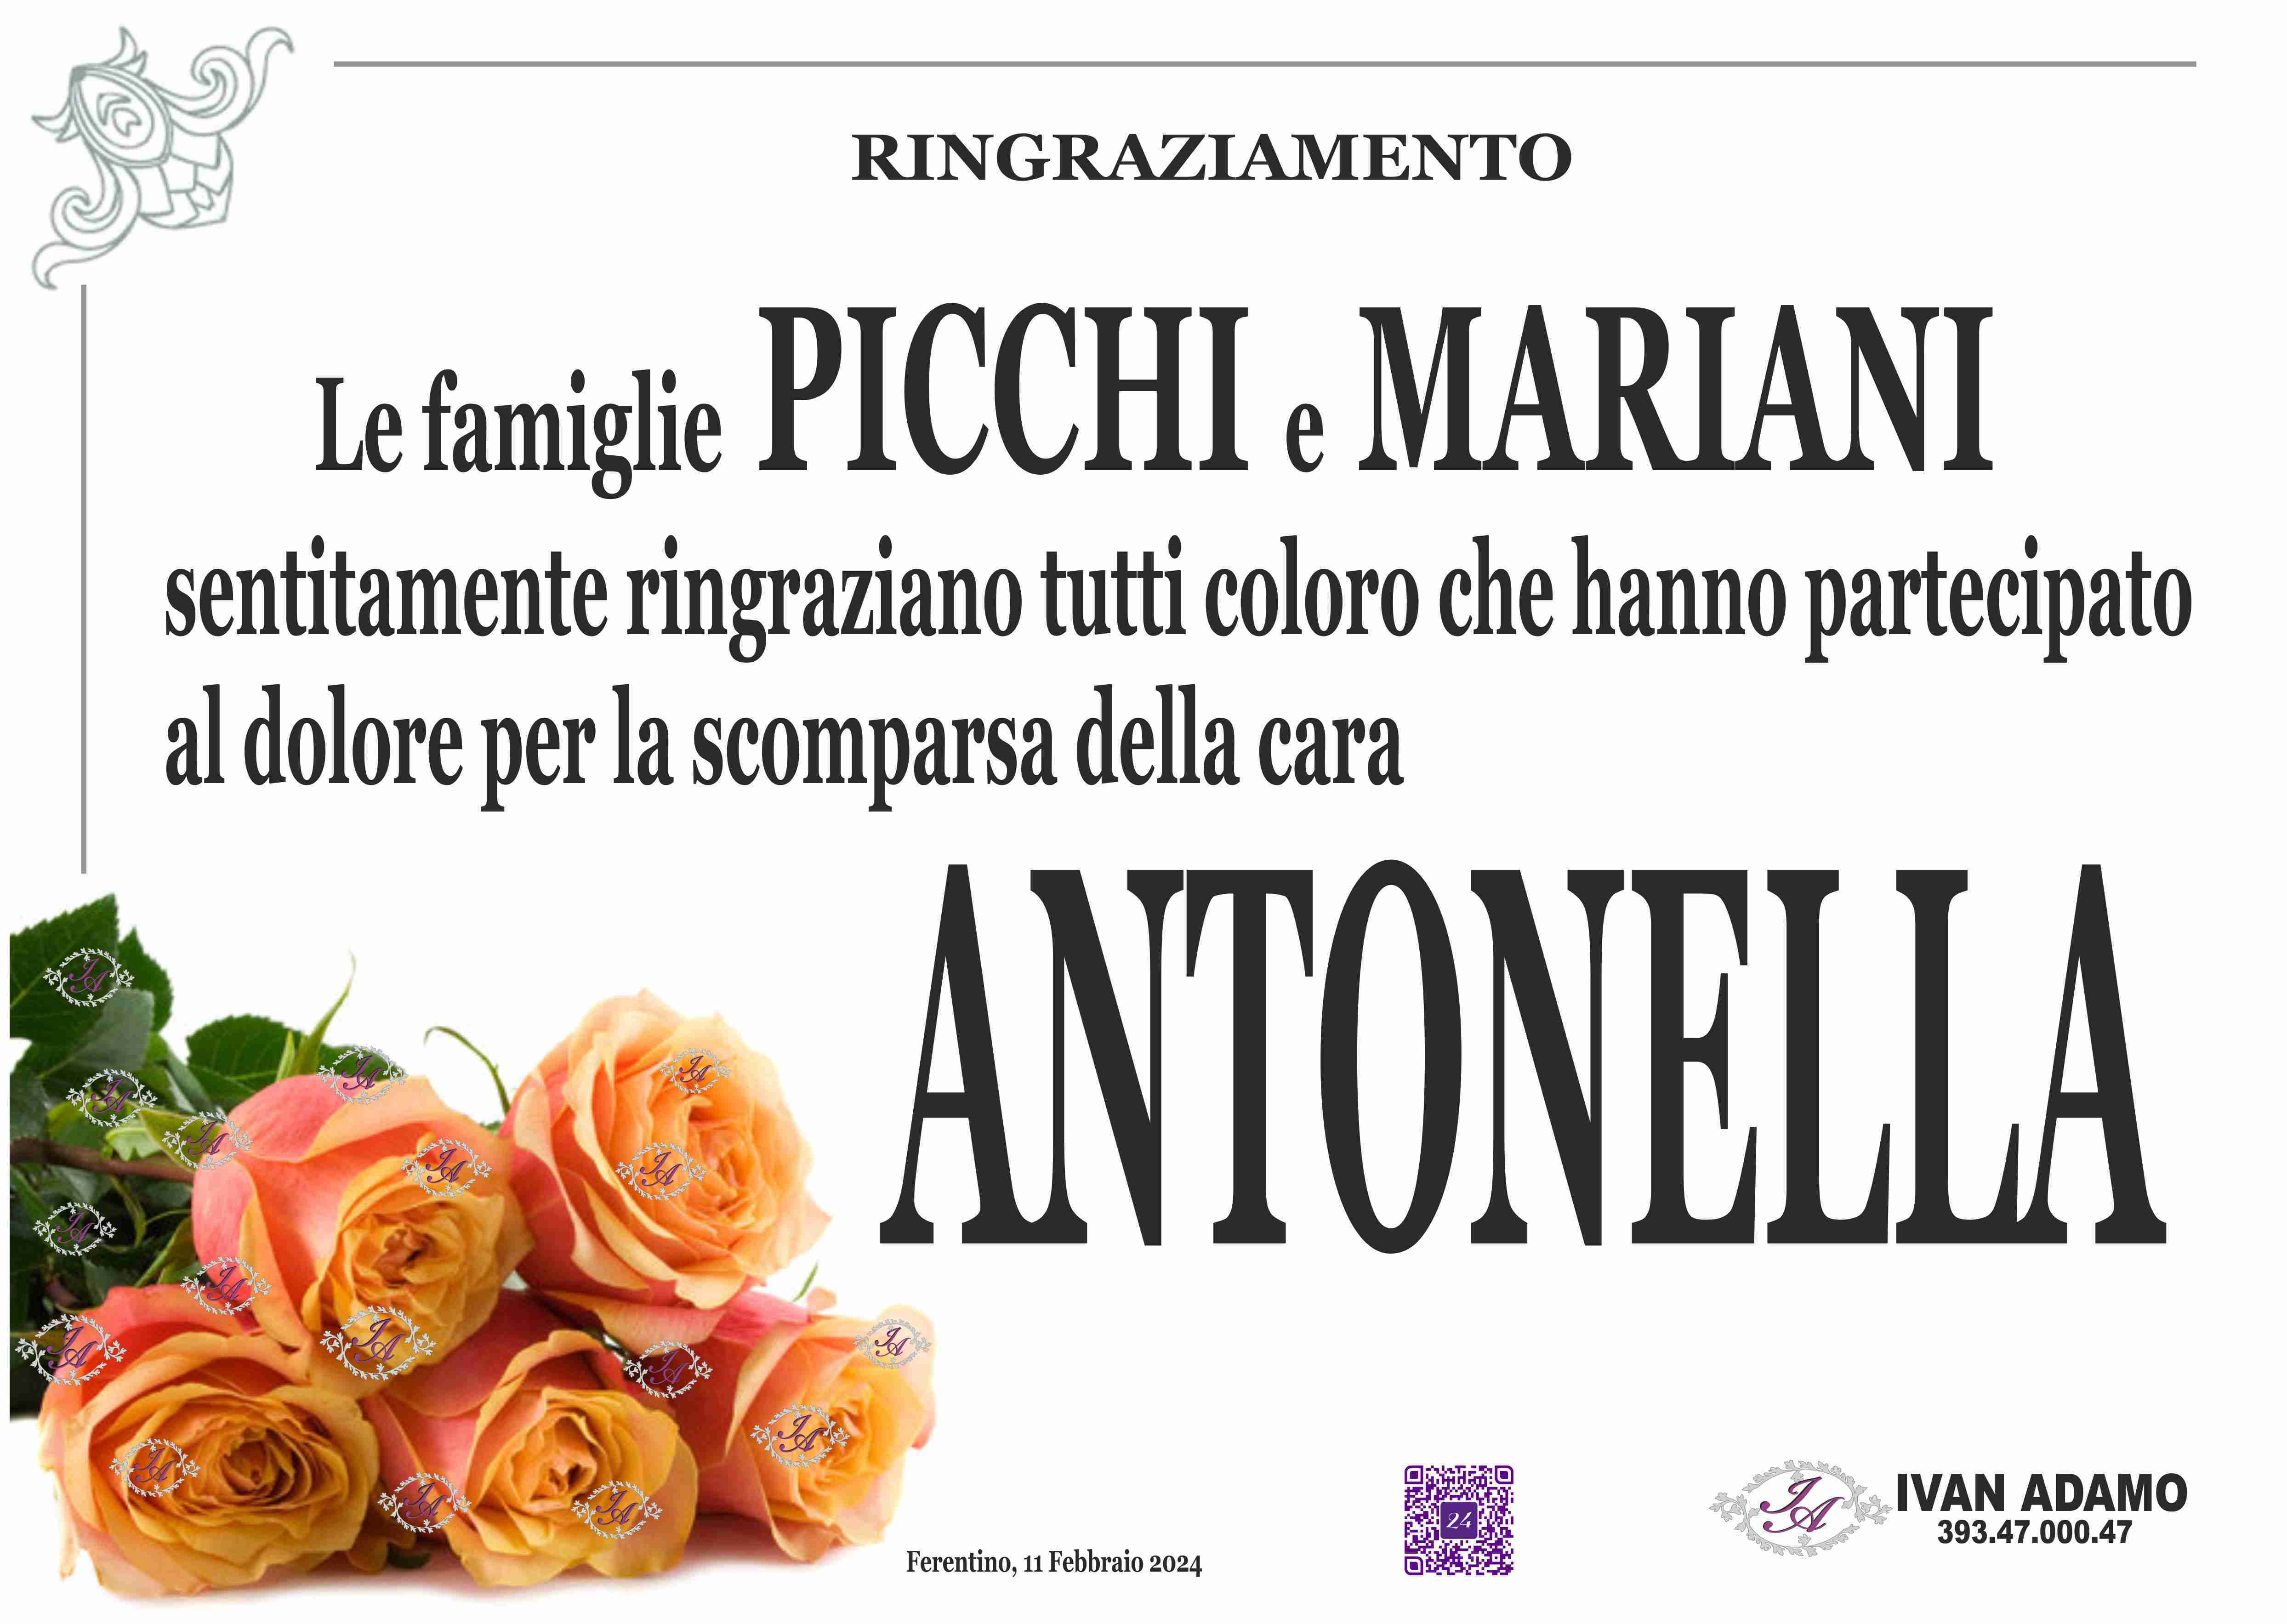 Antonella Mariani